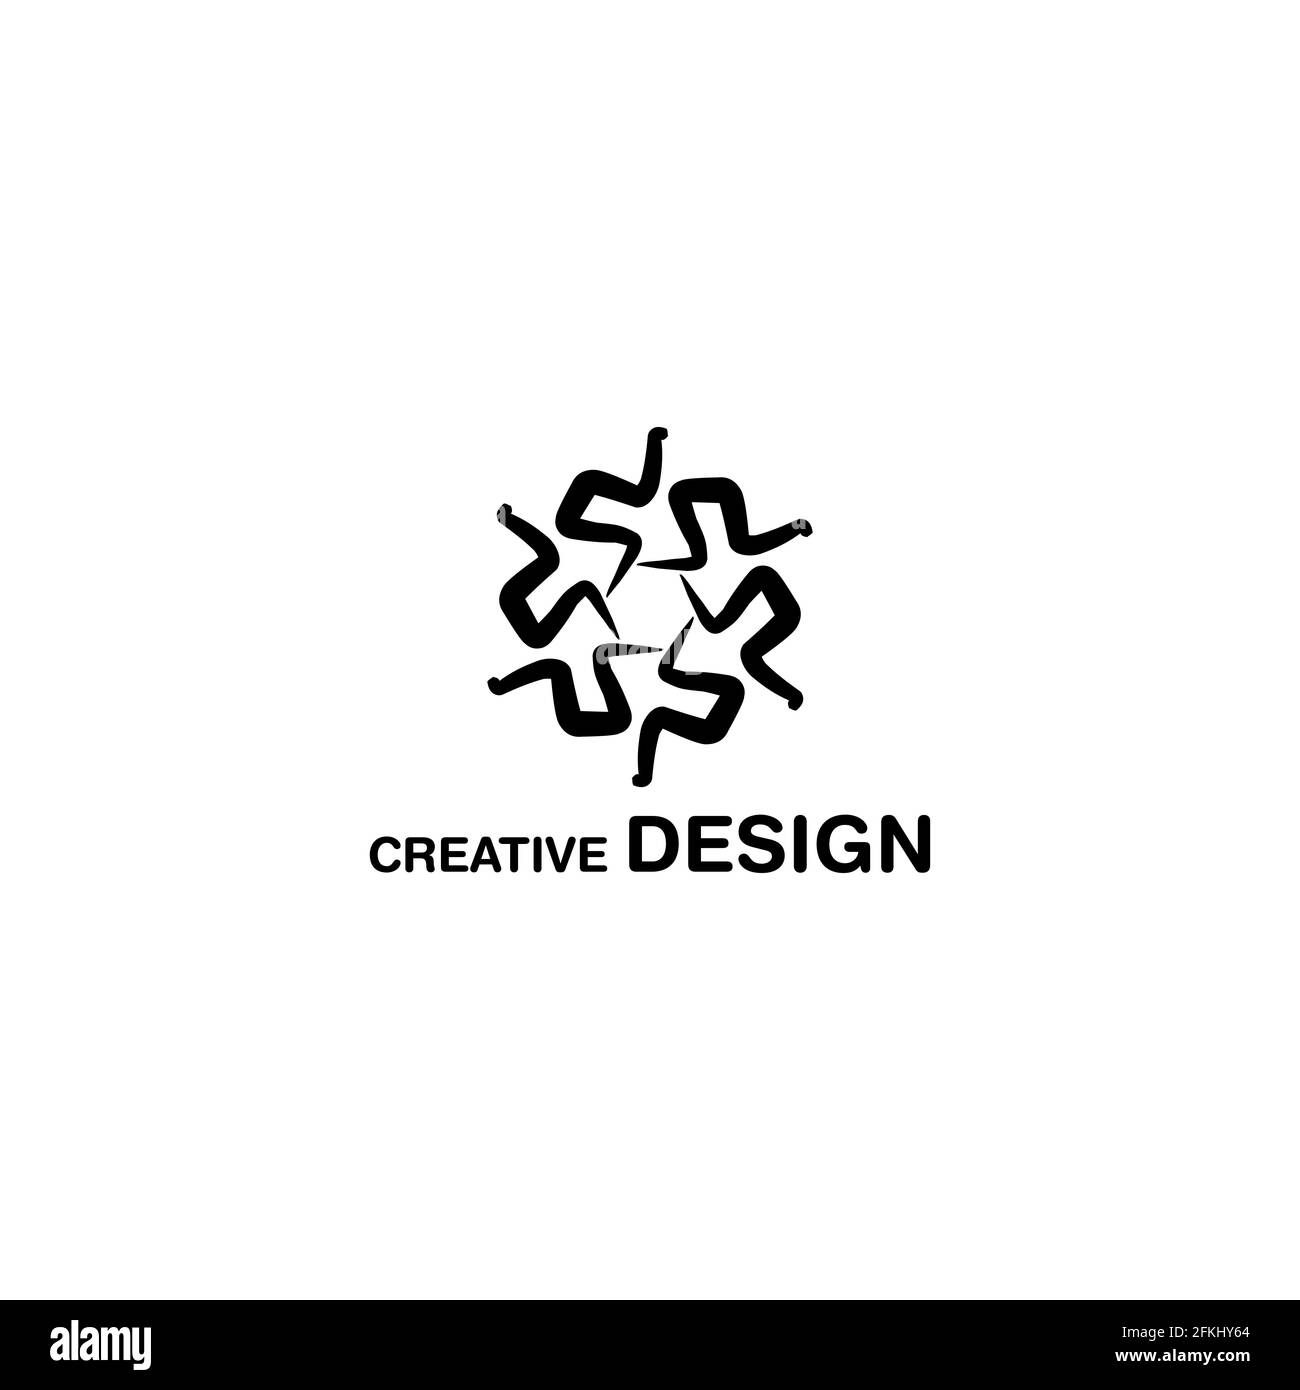 Abstract Radial Creative Logo Design Vector Art EPS10 Stock Vector